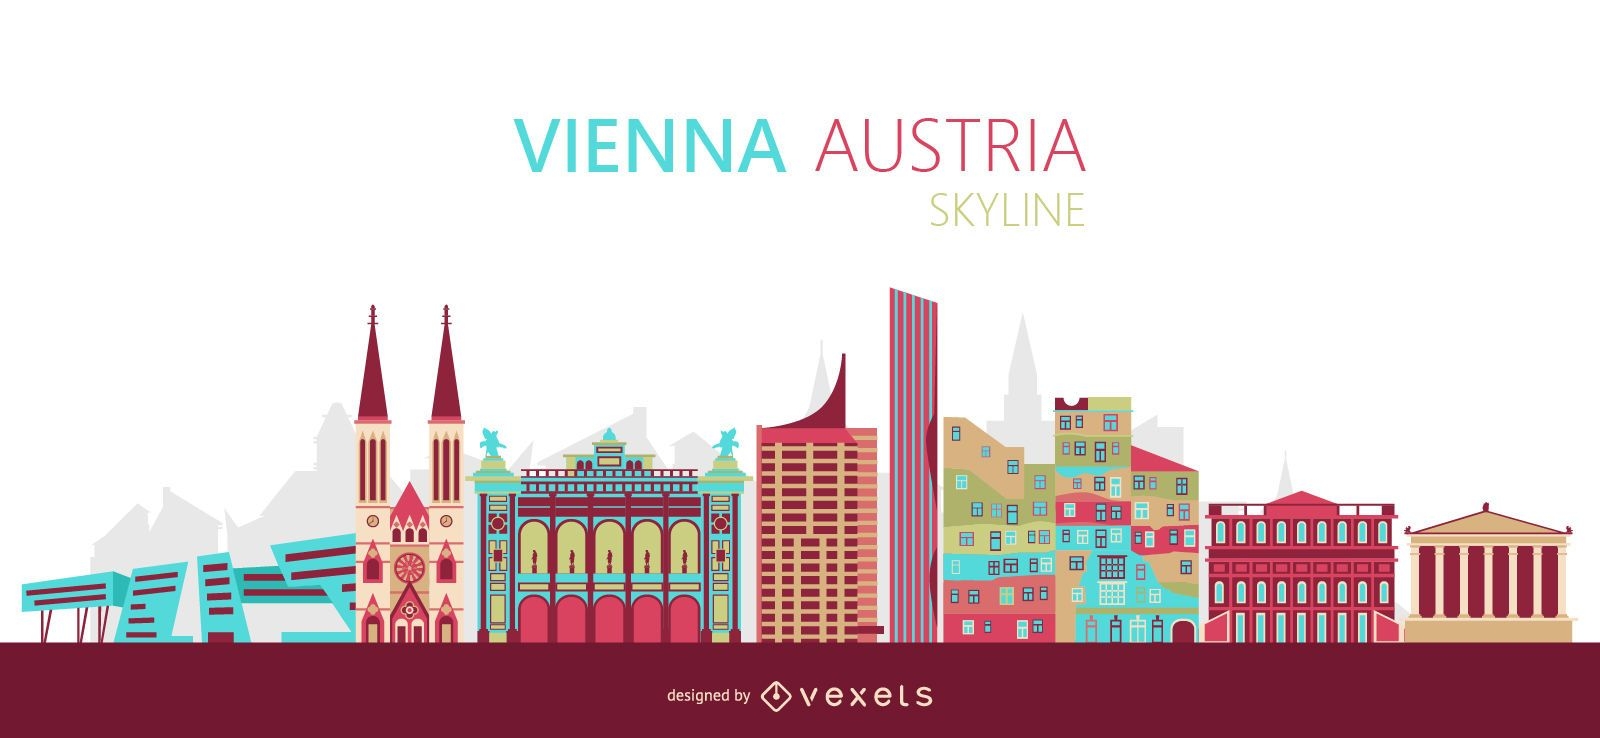 Vienna skyline illustration